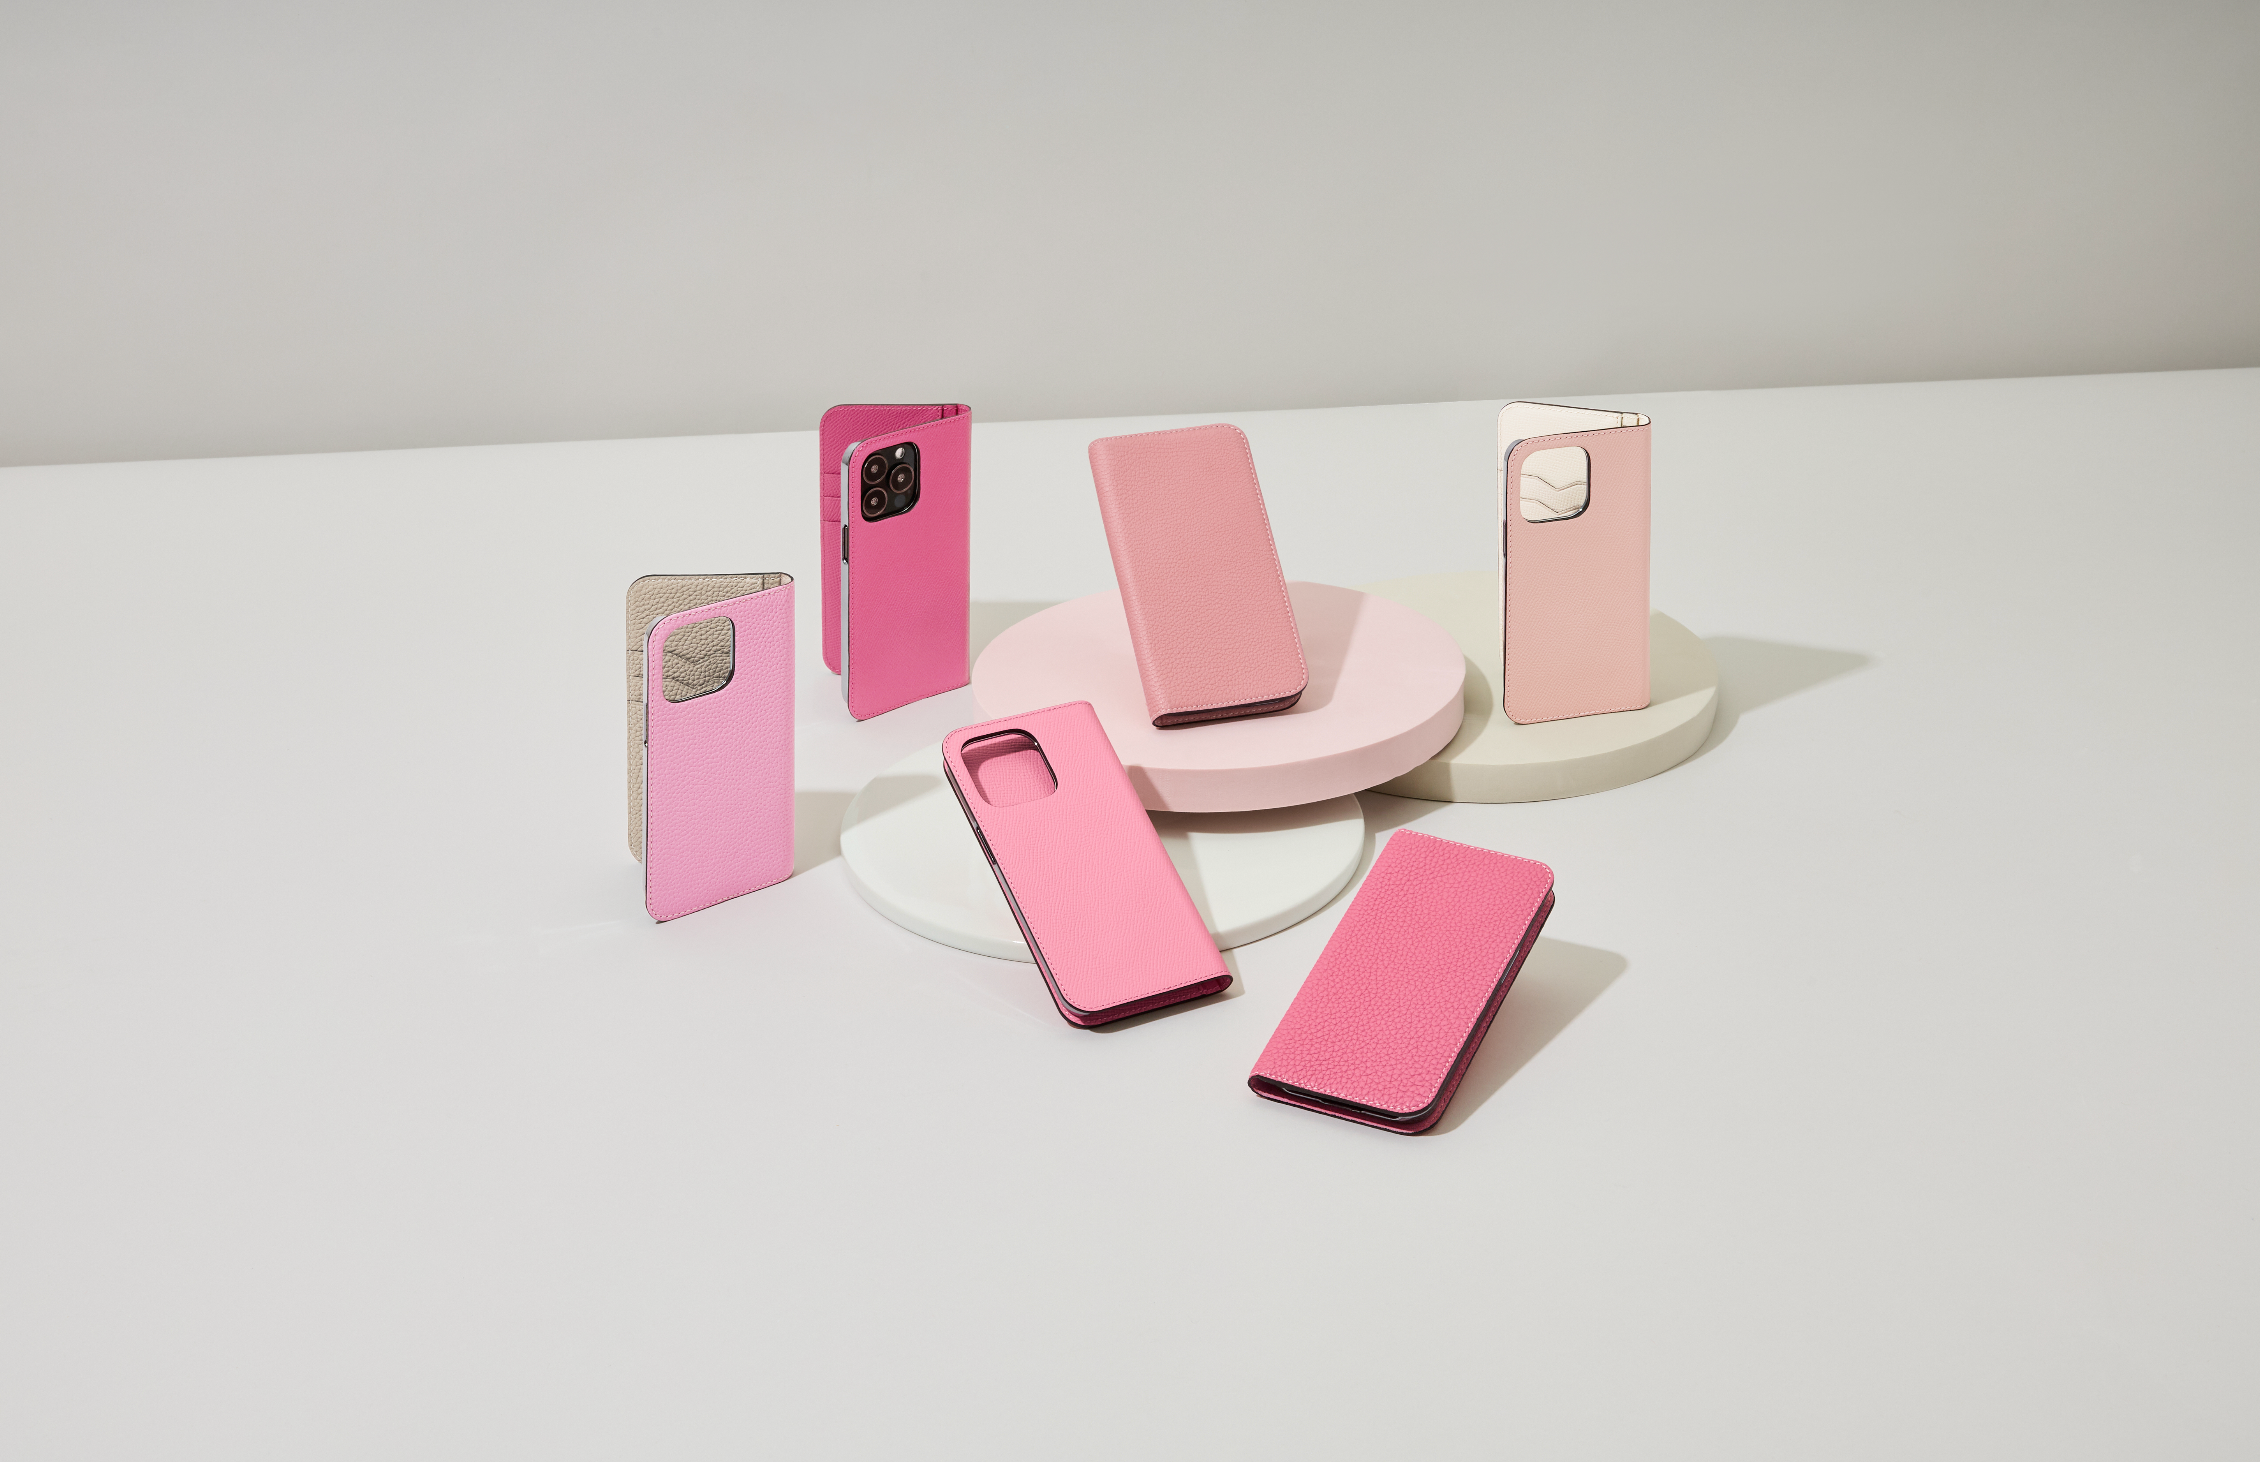 Elegáns iPhone bőr tokok a BONAVENTURA-tól a rózsaszín különböző árnyalataiban.